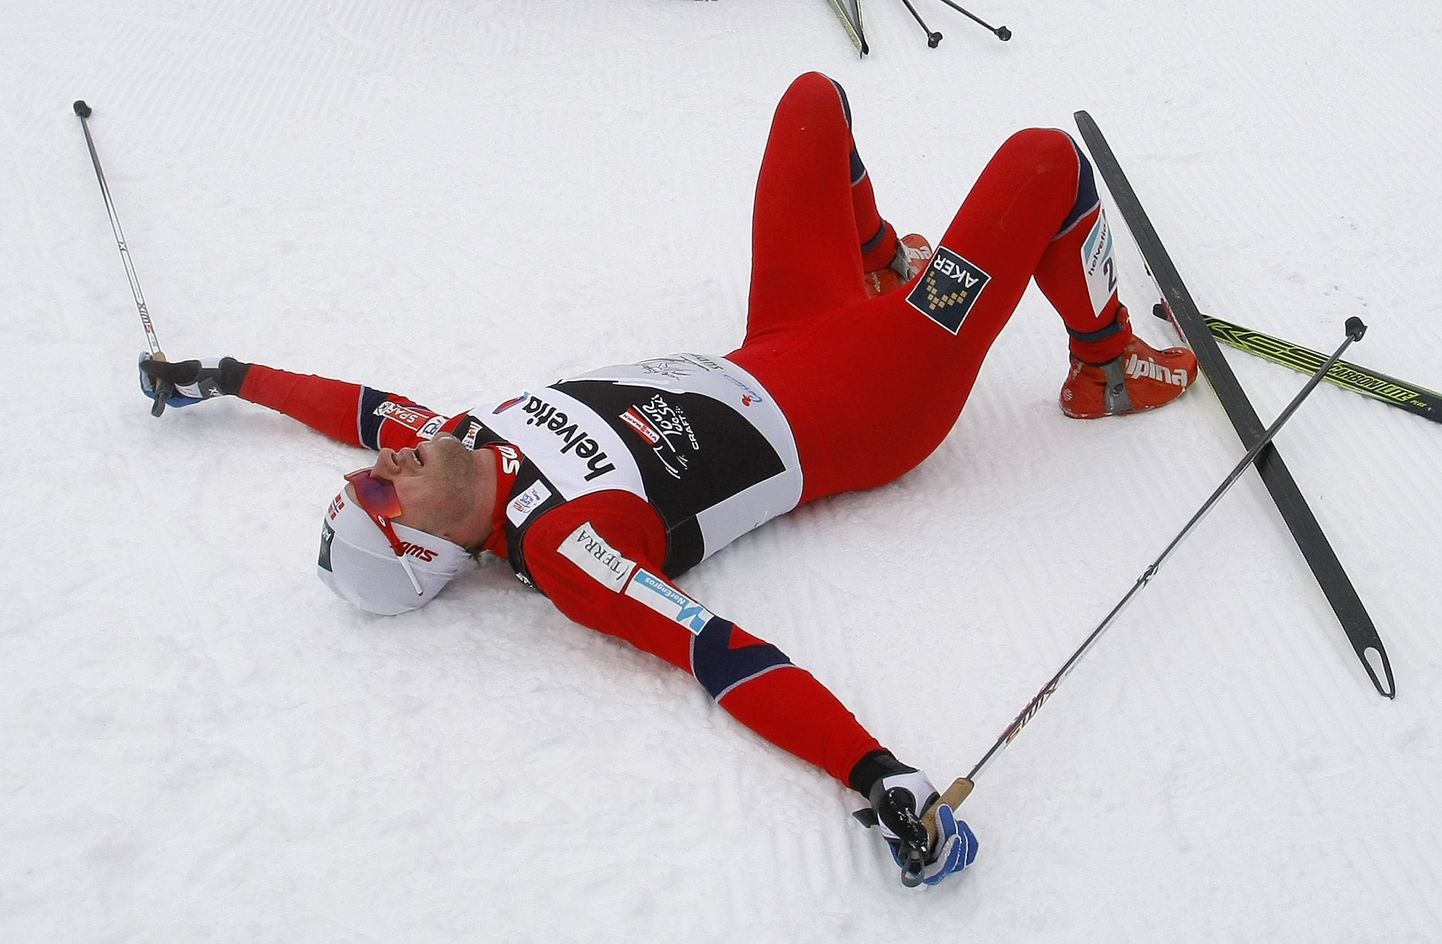 Tour de Ski'l teisena lõpetanud Petter Northug sel aastal Otepääl ei võistle.